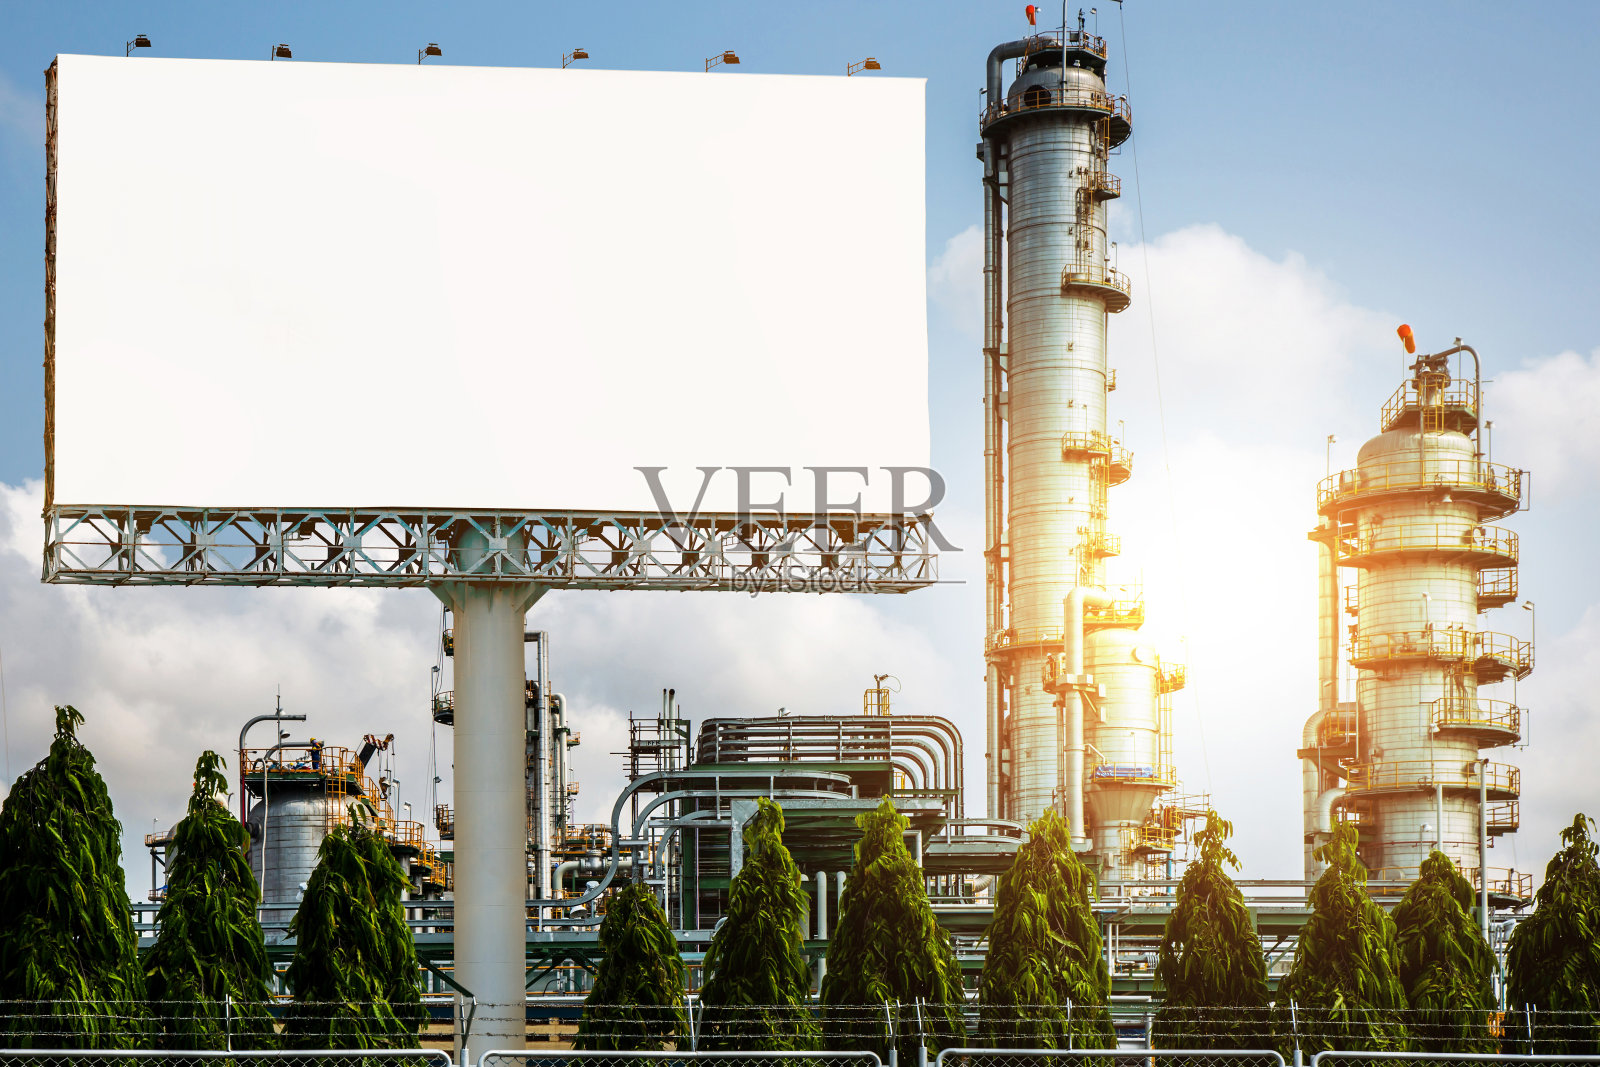 空白广告牌与炼油厂,燃料石油工业工厂日落阳光-可以展示或蒙太奇产品或业务的广告。照片摄影